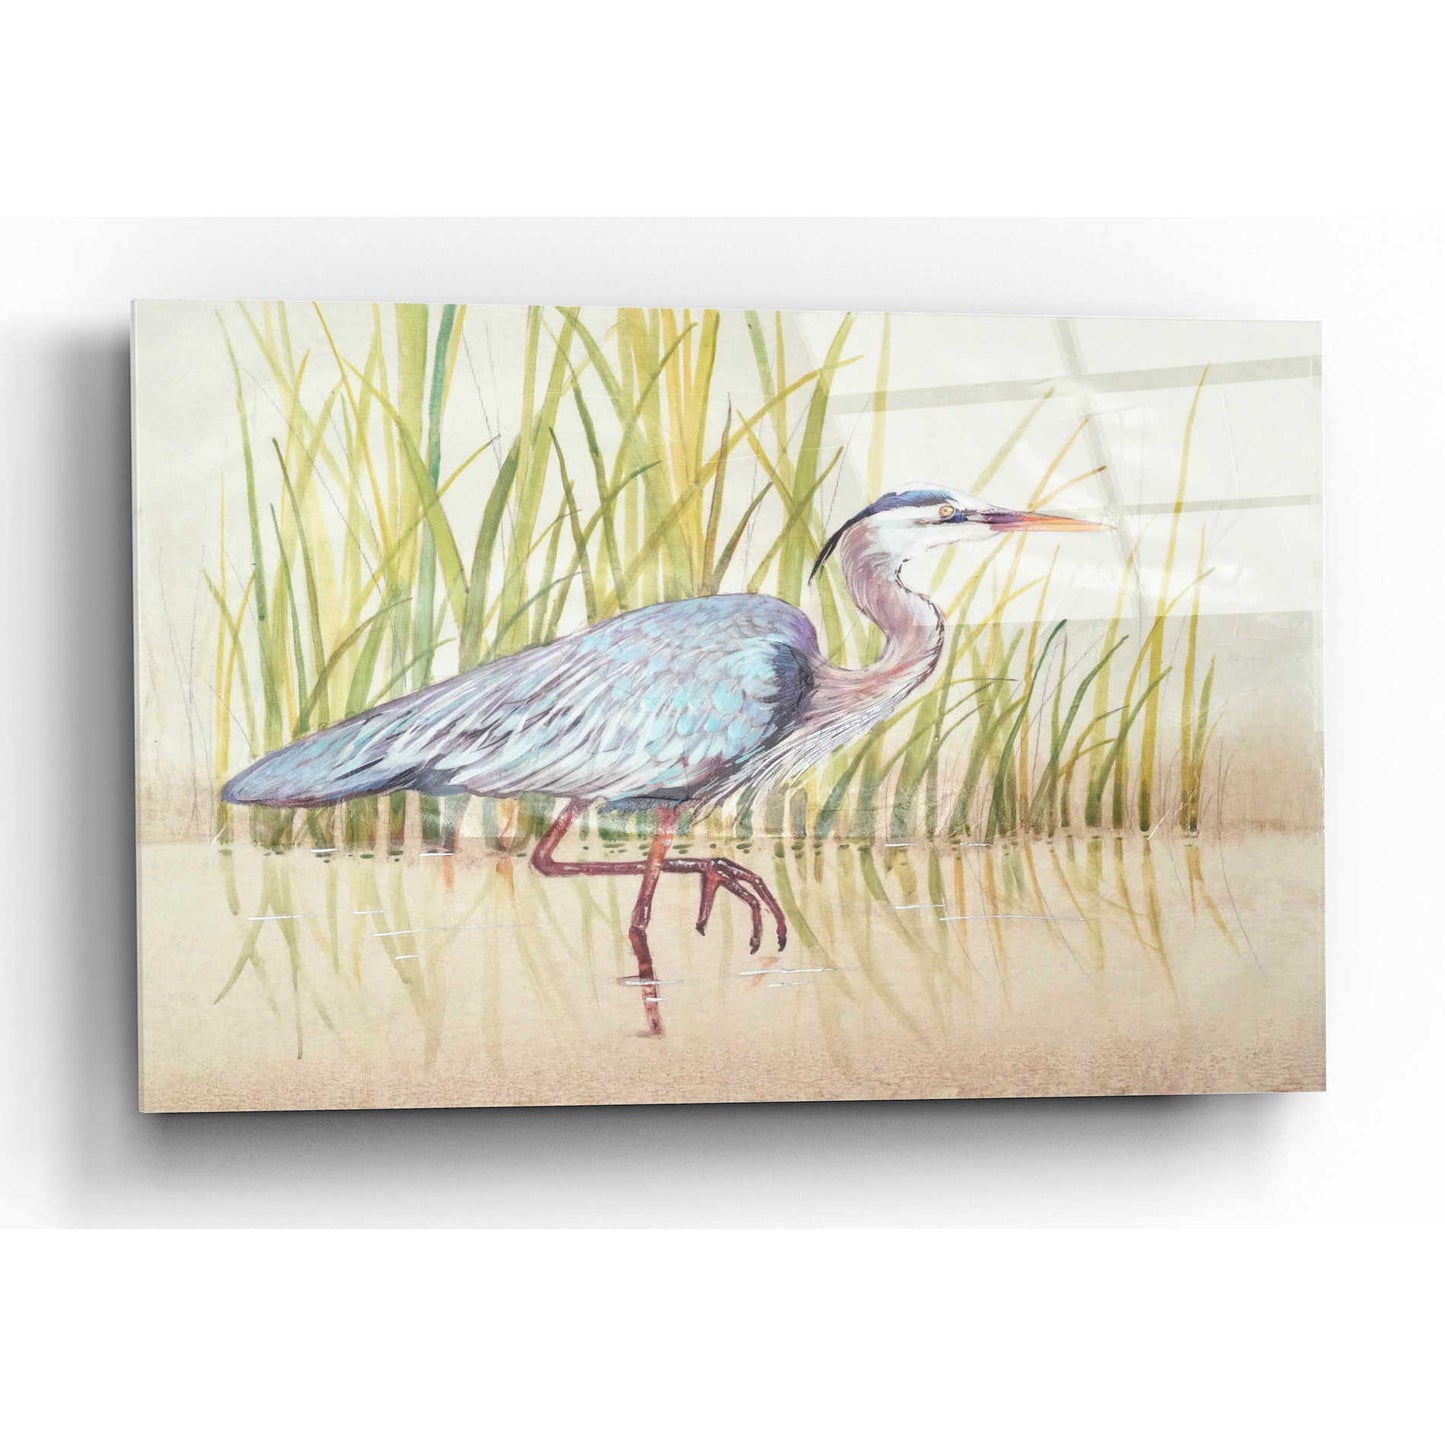 Epic Art 'Heron & Reeds I' by Tim O'Toole, Acrylic Glass Wall Art,24x16